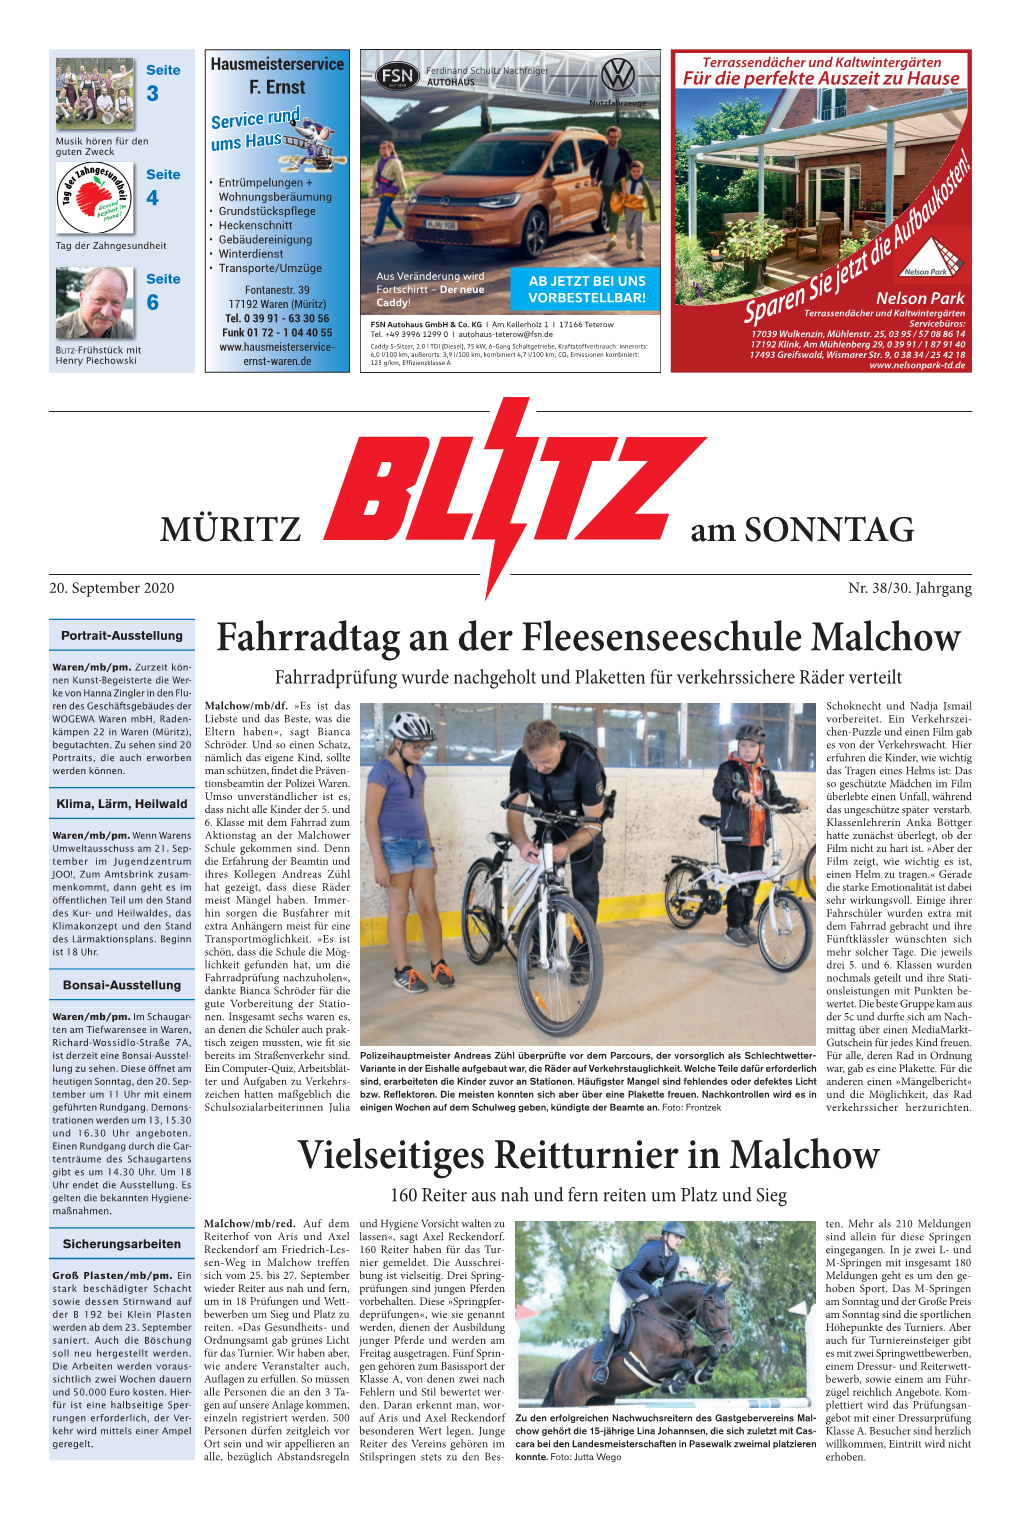 Vielseitiges Reitturnier in Malchow Fahrradtag an Der